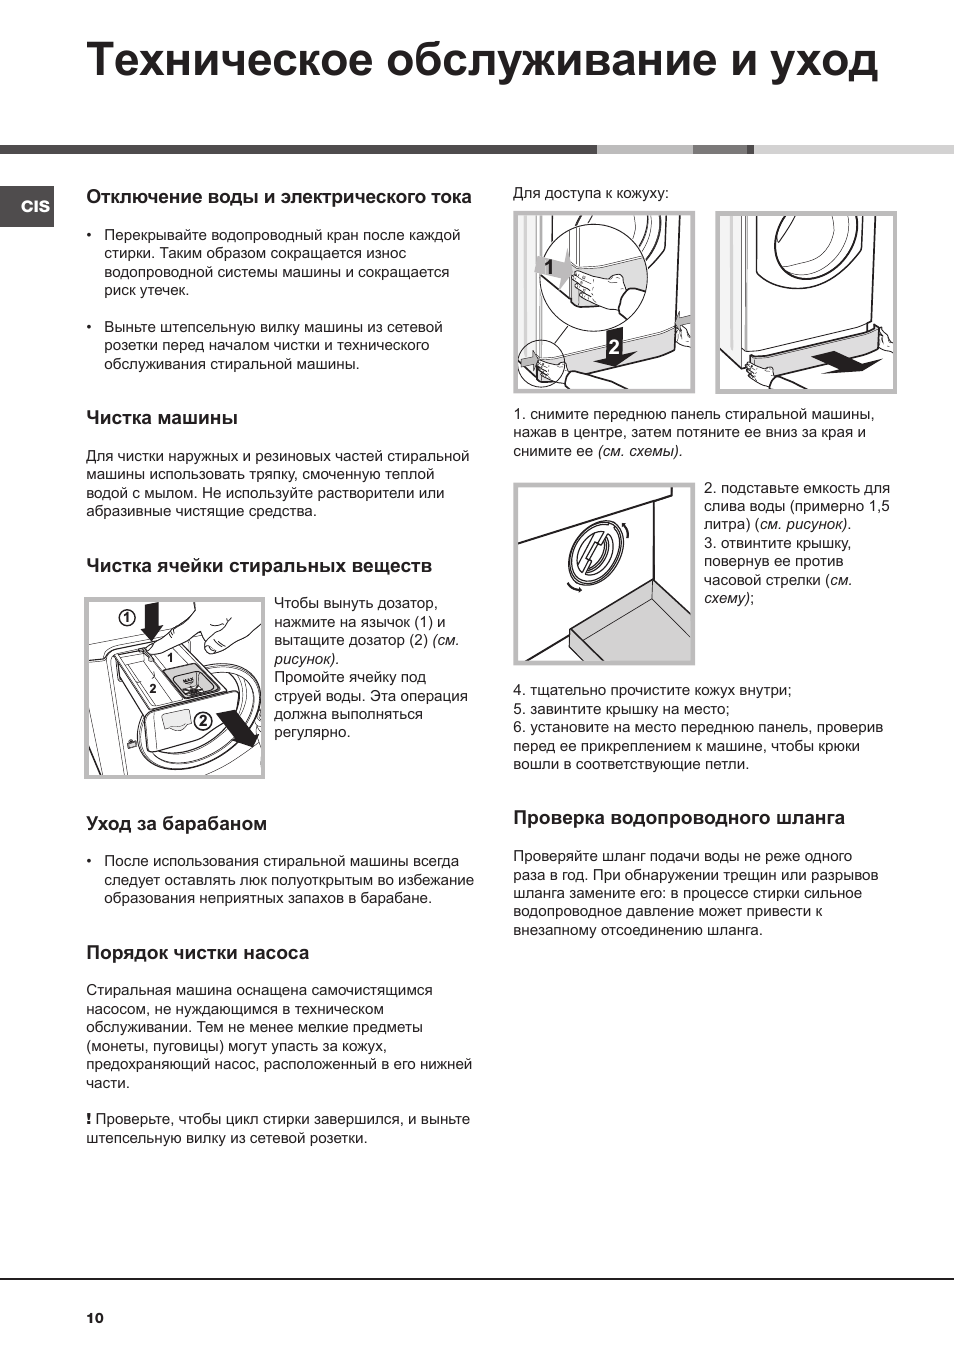 Как пользоваться стиральной машиной полуавтомат - инструкция